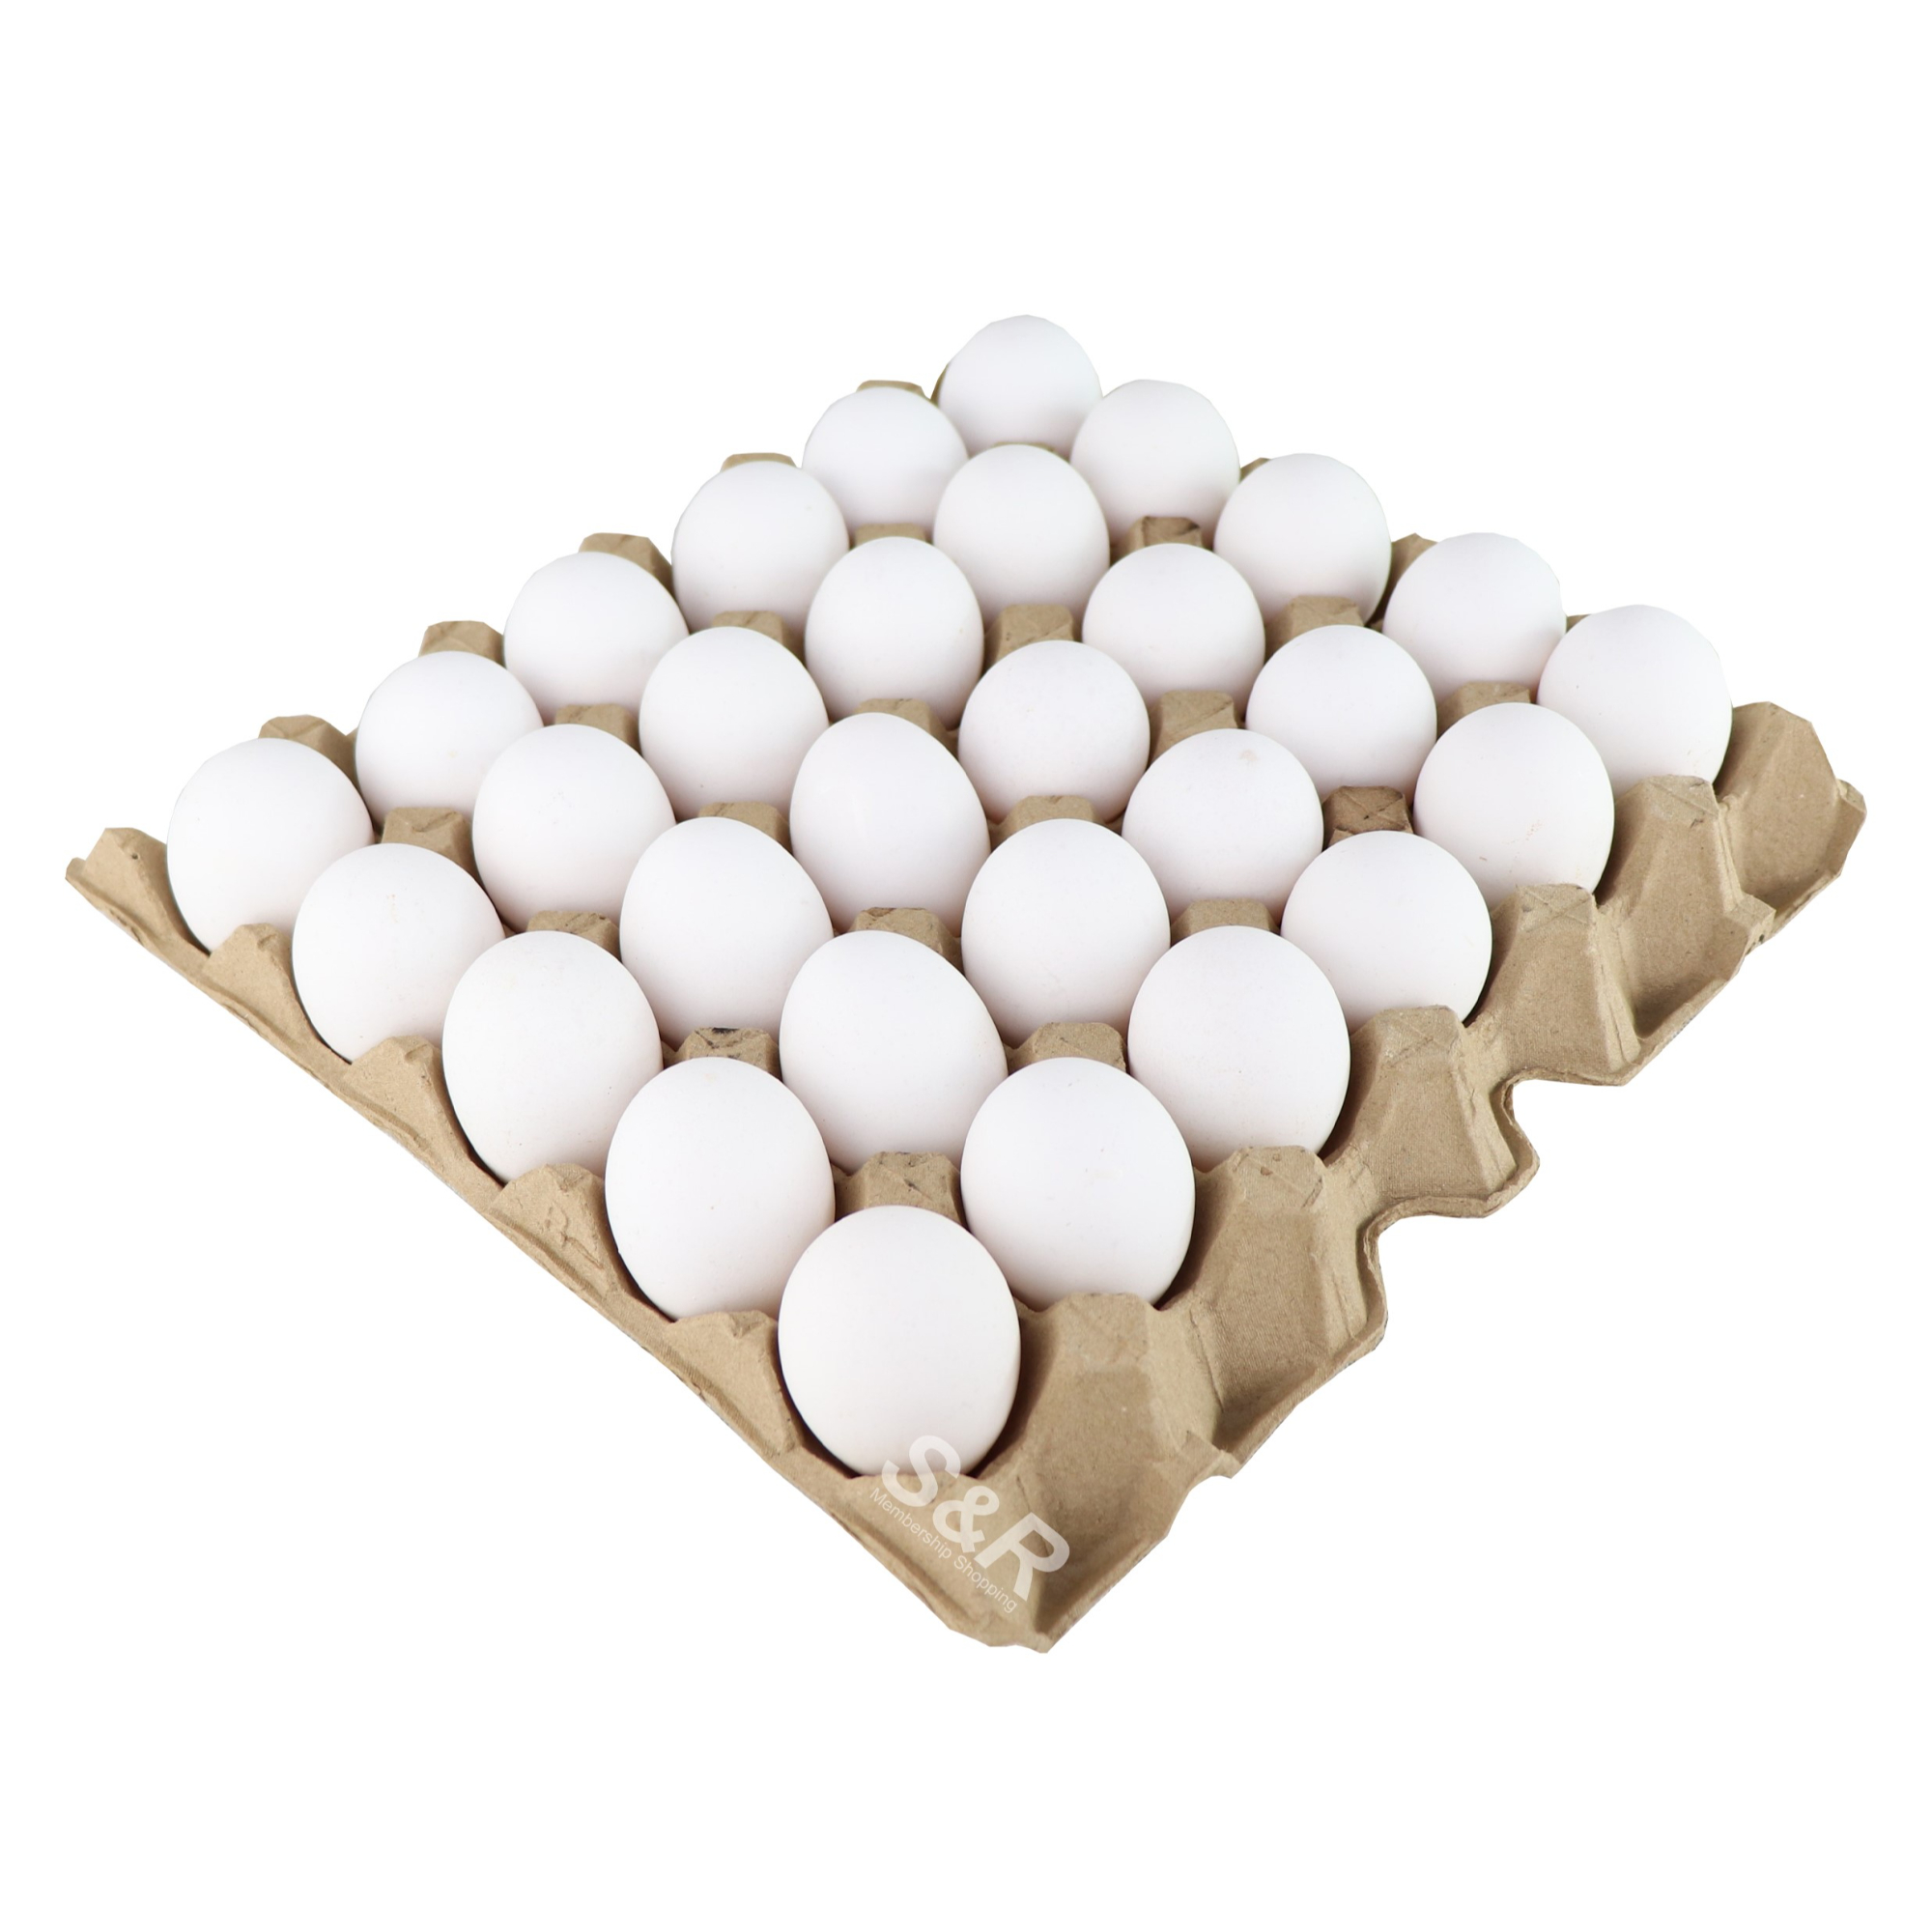 S&R Premium Fresh Medium Eggs 30pcs